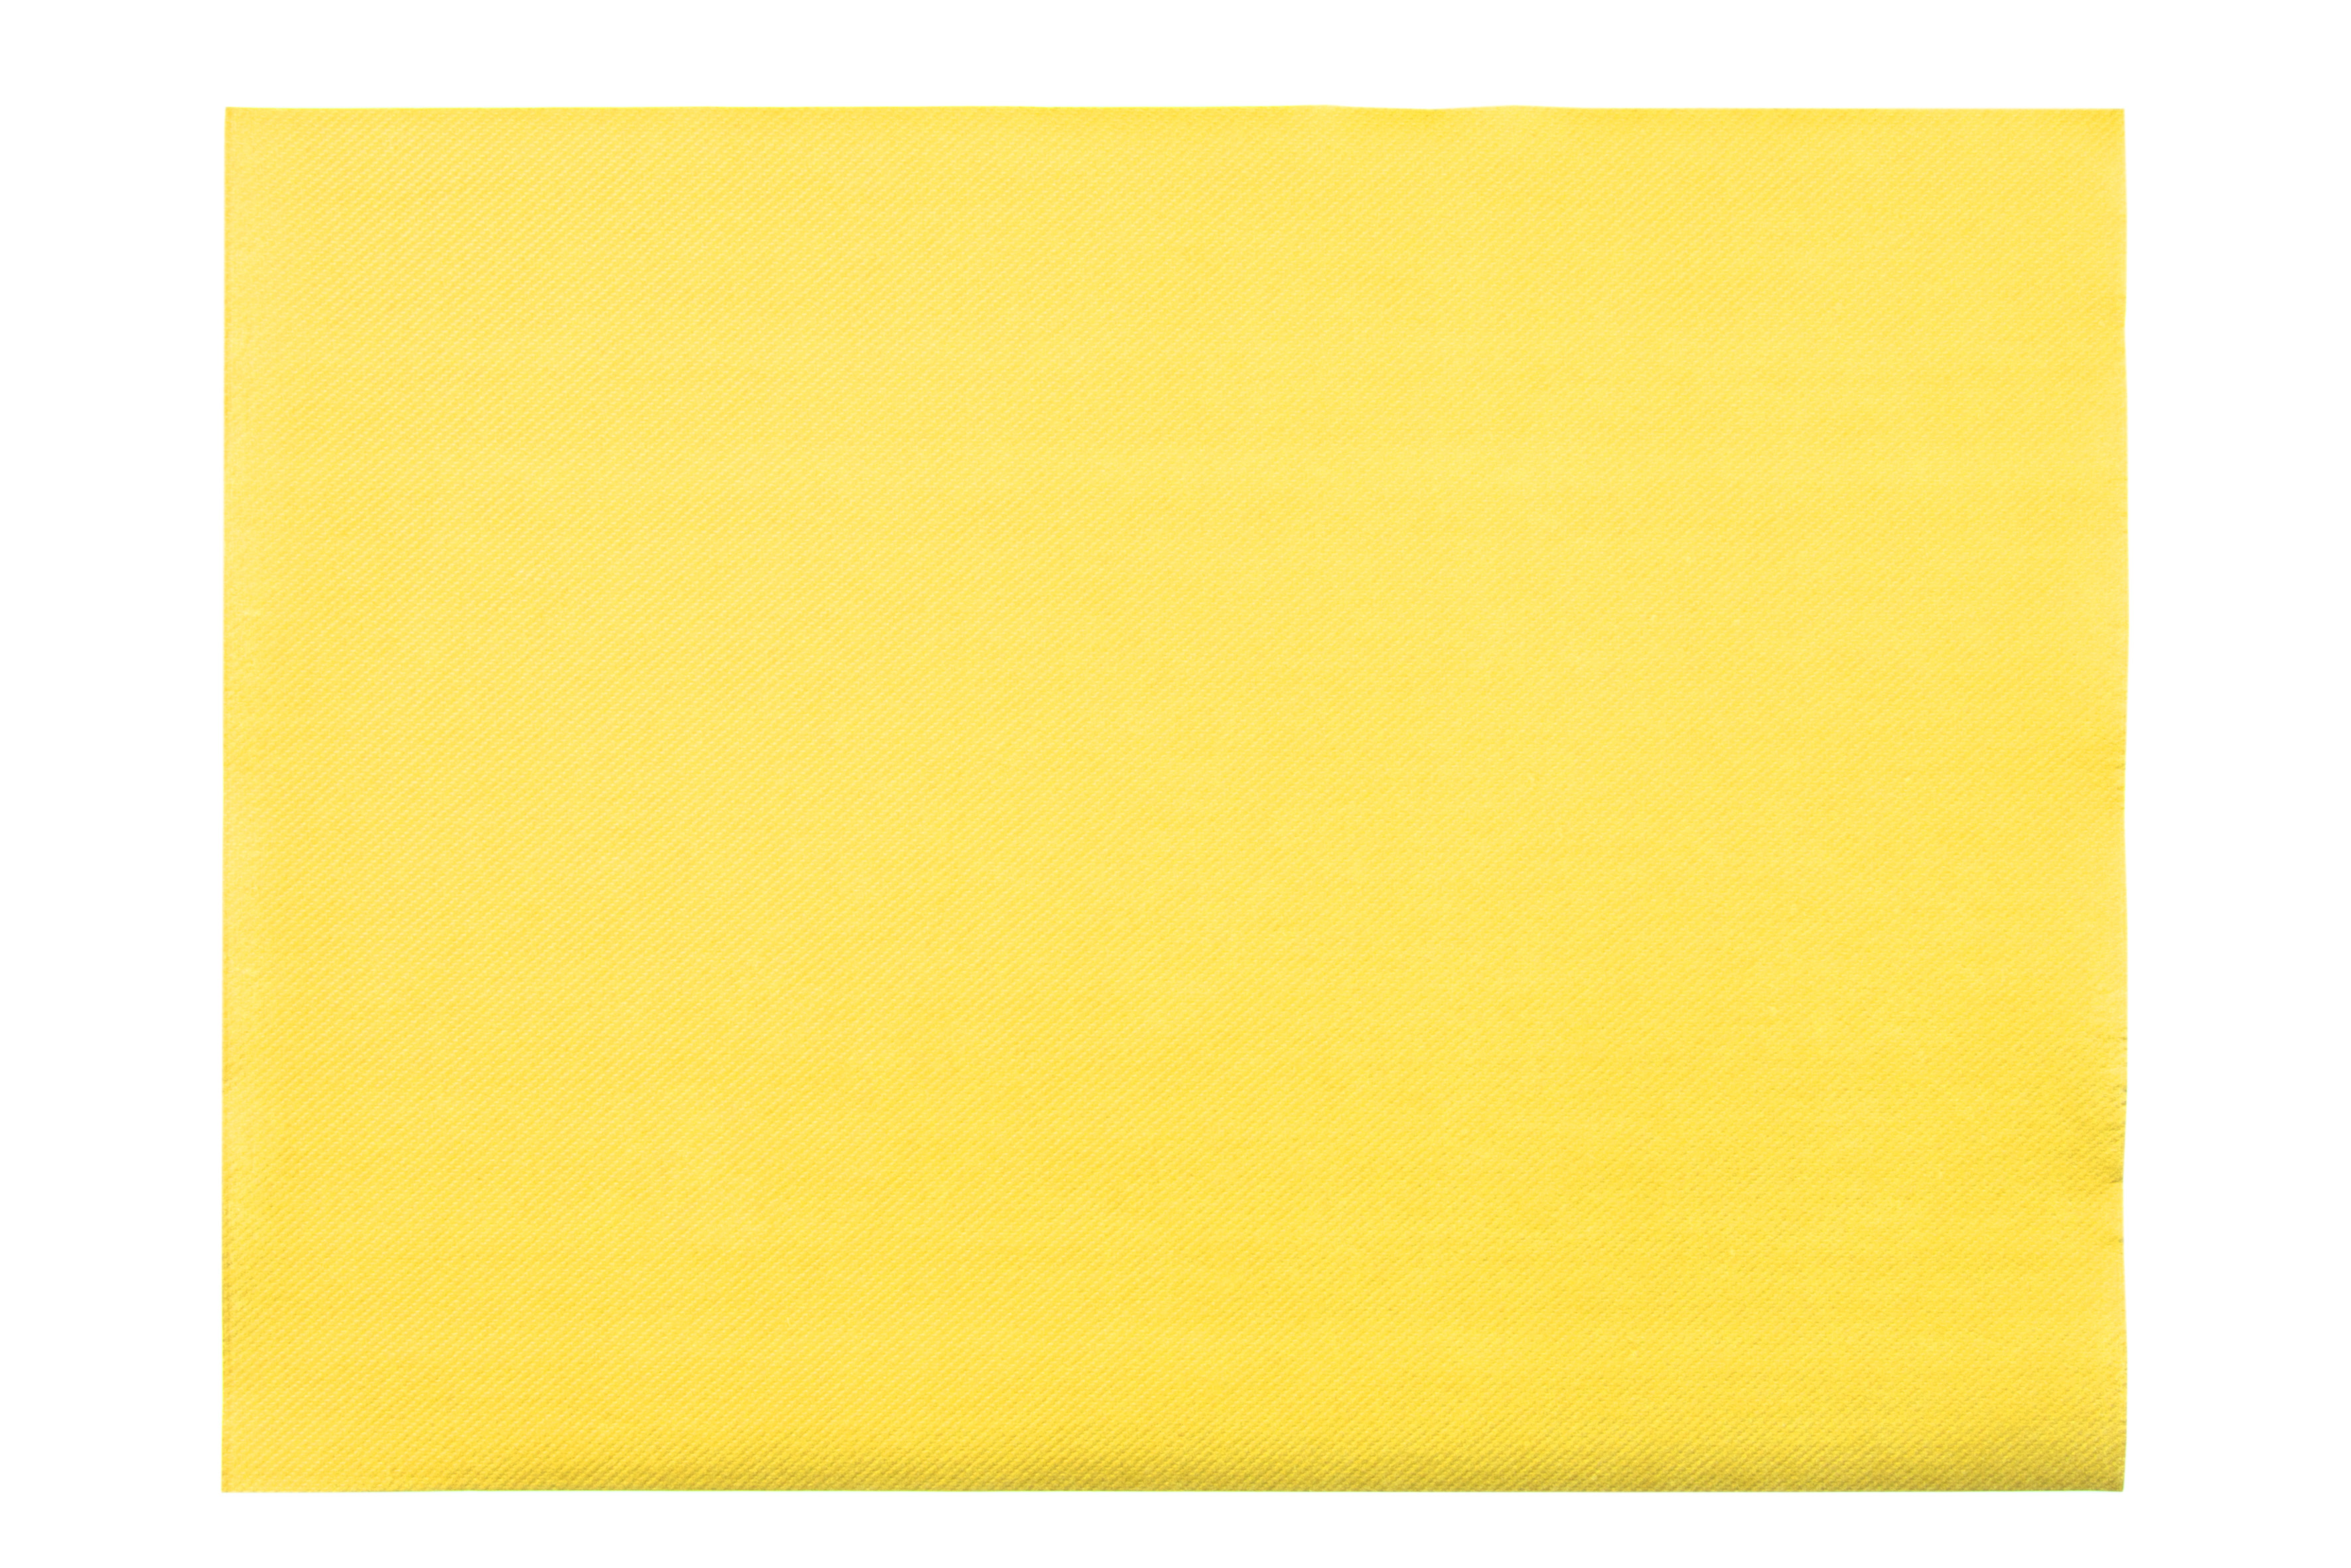 Mank Tischsets Linclass 40 x 30 cm, Basic gelb